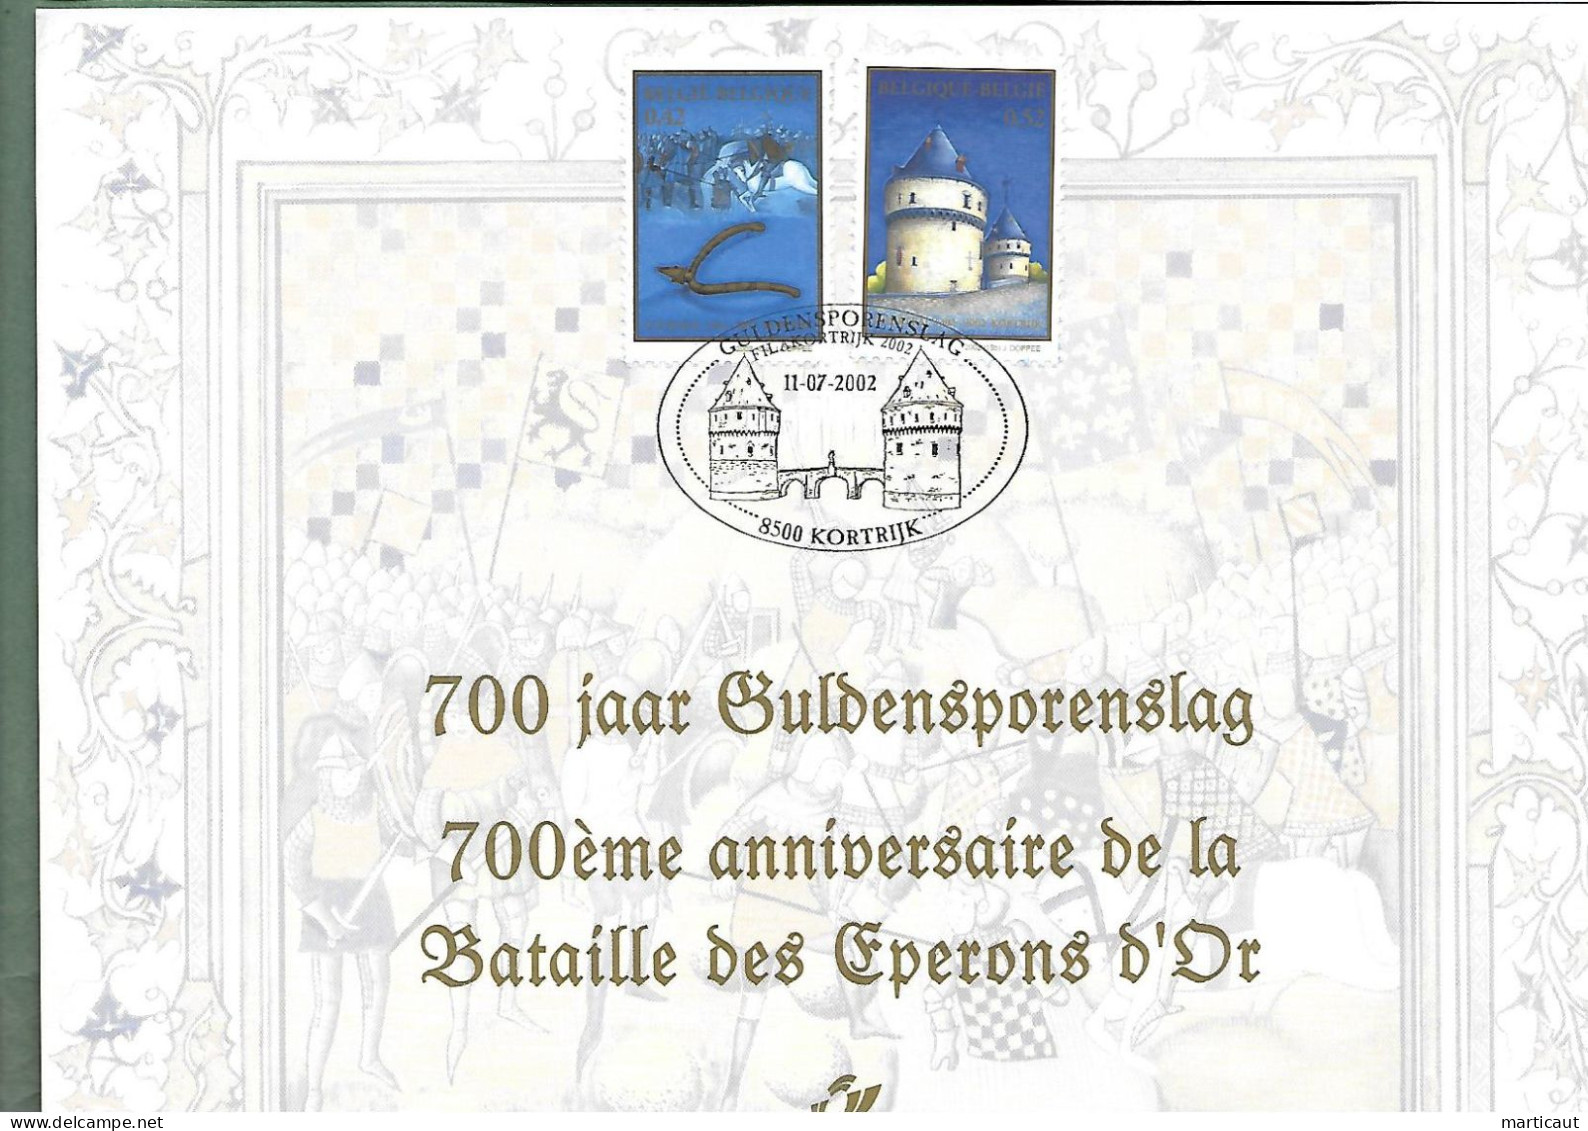 HK 3088 -  Belgique Guldensporenslag - Année 2002 - Souvenir Cards - Joint Issues [HK]